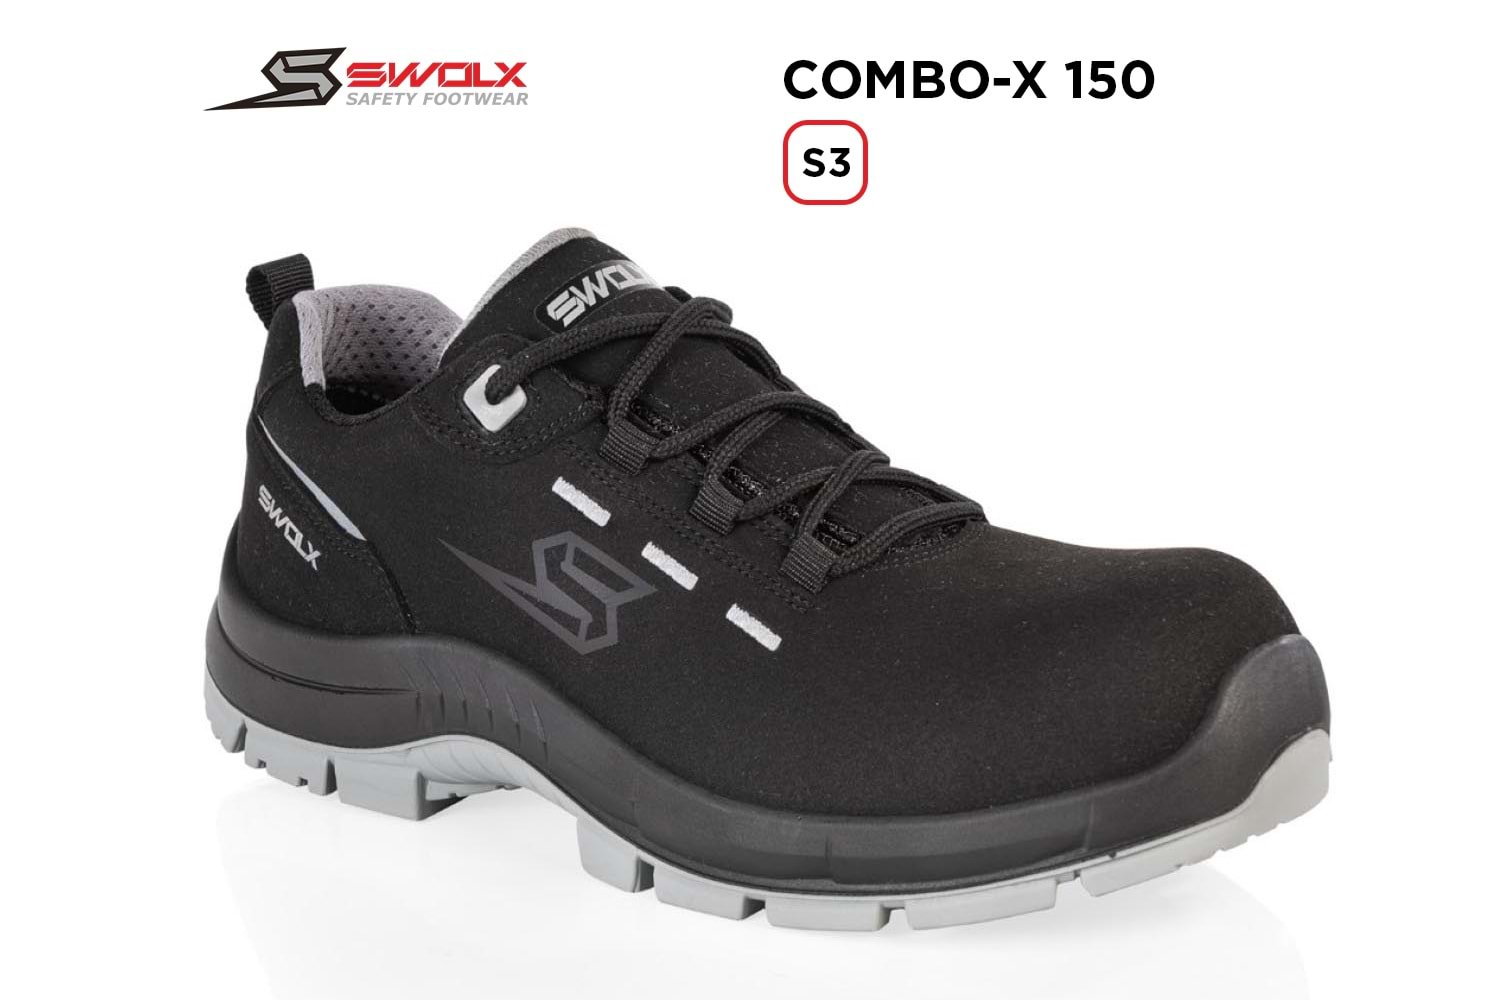 Swolx İş Ayakkabısı - Combo-X 150 S3 - 42